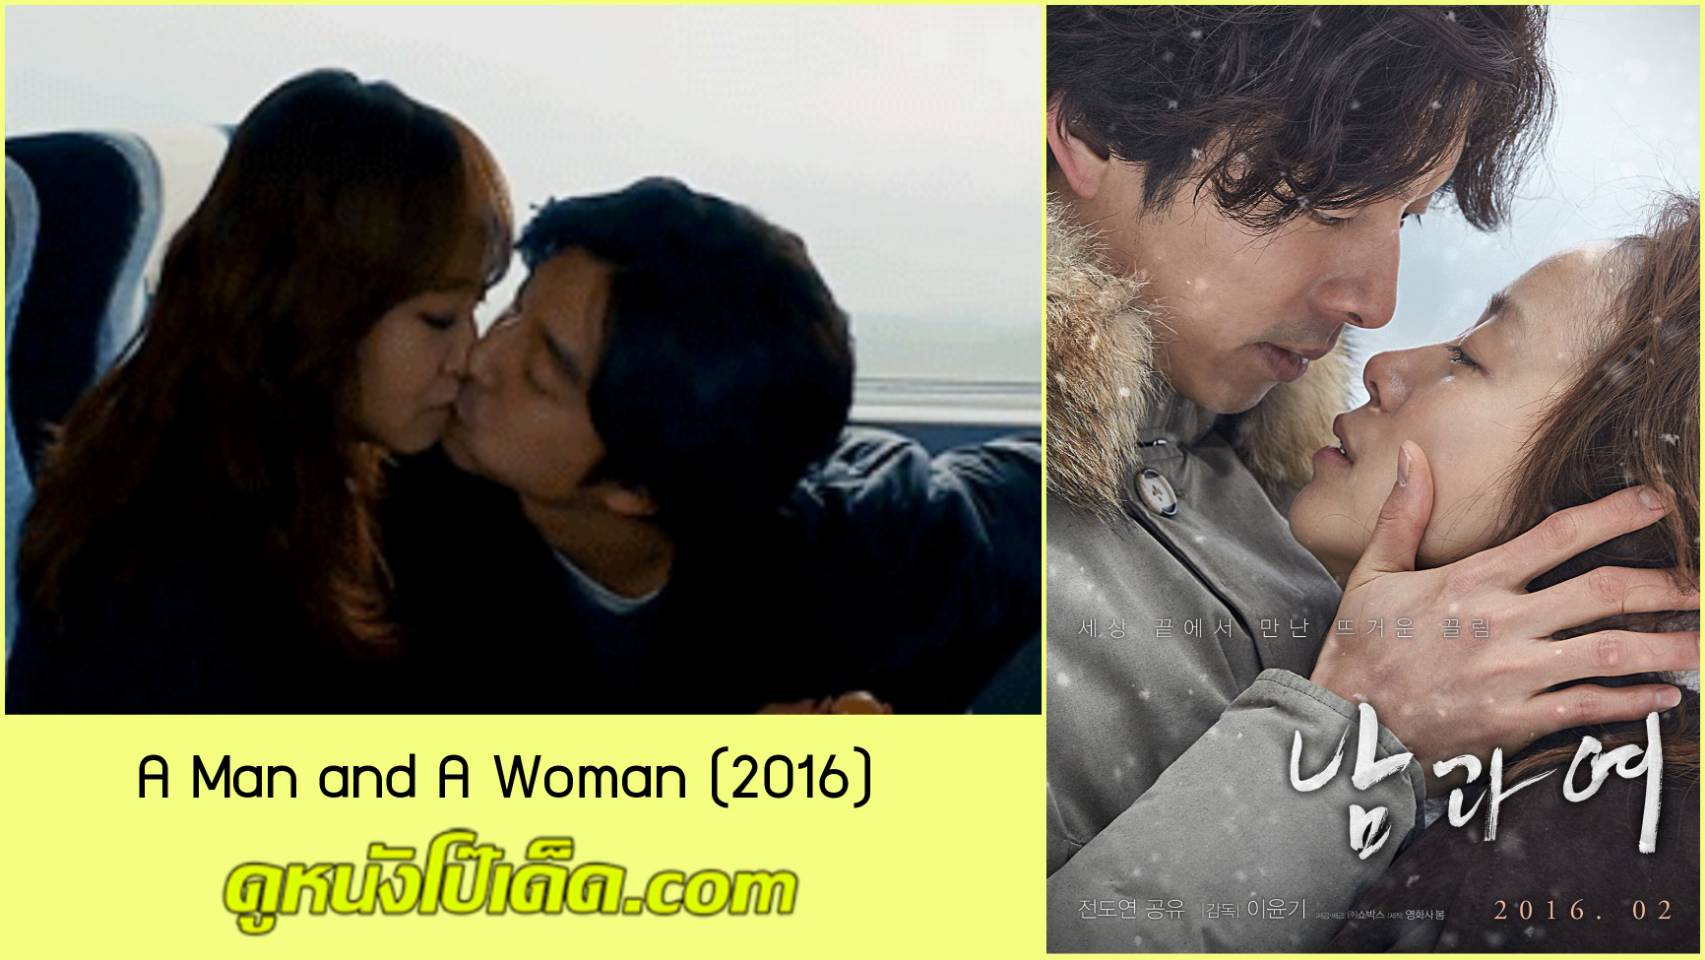 ภาพยนตร์18+ รอยจูบของกงยู A Man and A Woman (2016) หนังอาร์เกาหลีซับไทย คัดเอาเฉพาะฉากที่กงยูมีเพศสัมพันธ์แบบเสียวขั้นสุดกับจอนโดยอน หุ่นXบั้นเด้าดีมาก ทำท่าบดไข่เหมือนจริงสุดๆ